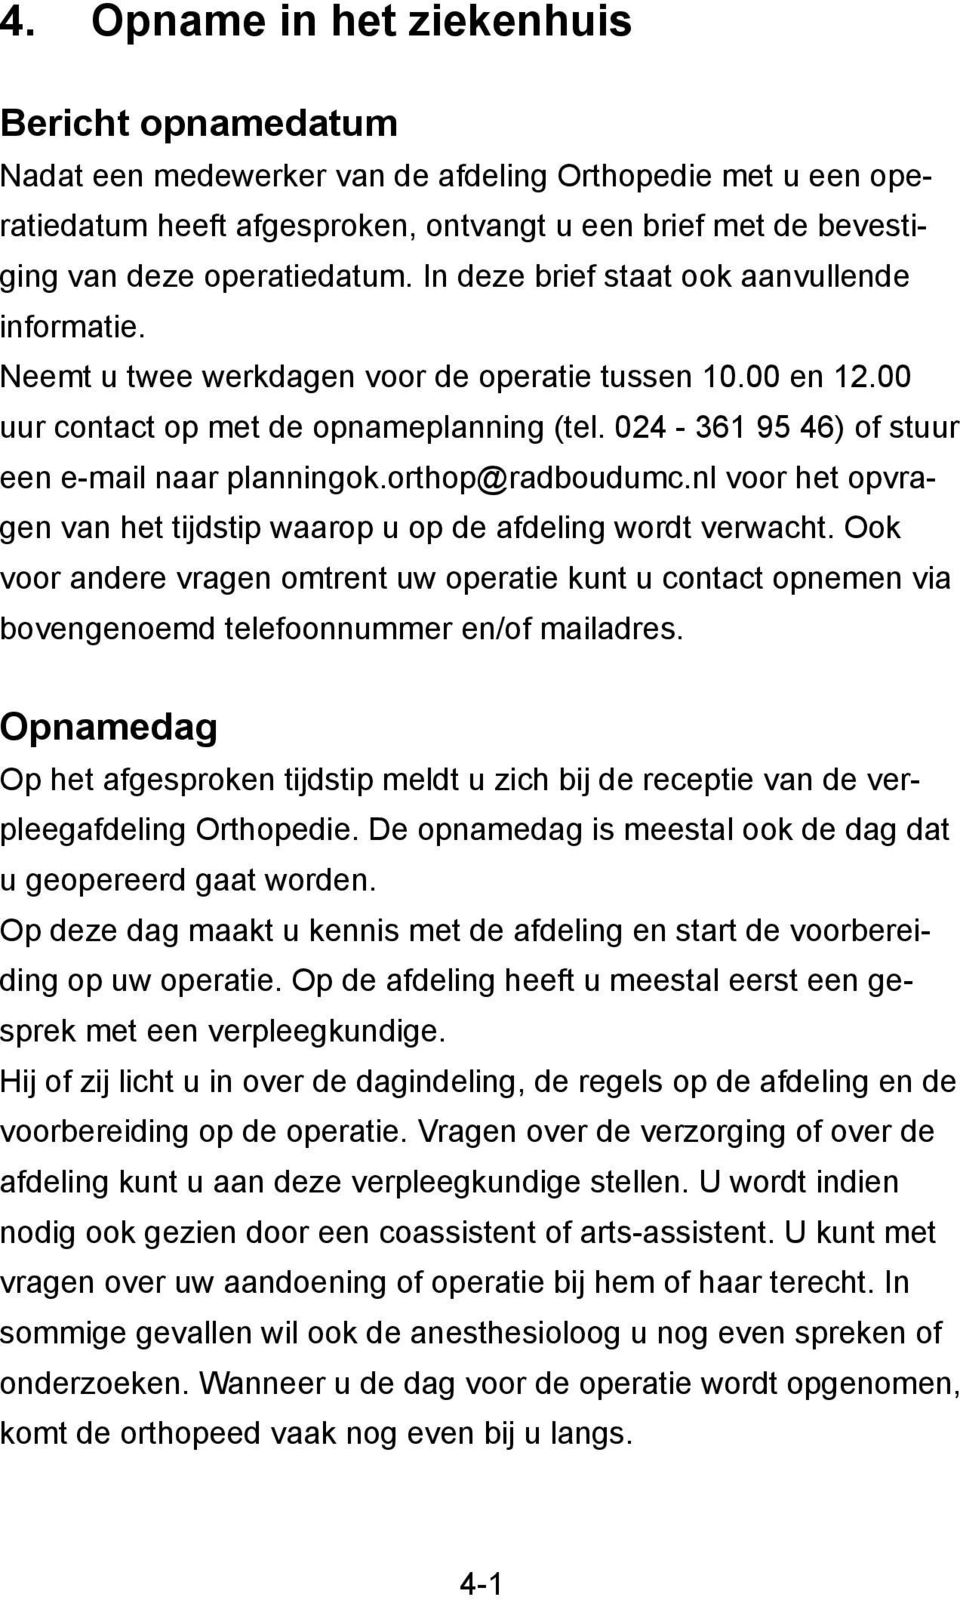 024-361 95 46) of stuur een e-mail naar planningok.orthop@radboudumc.nl voor het opvragen van het tijdstip waarop u op de afdeling wordt verwacht.